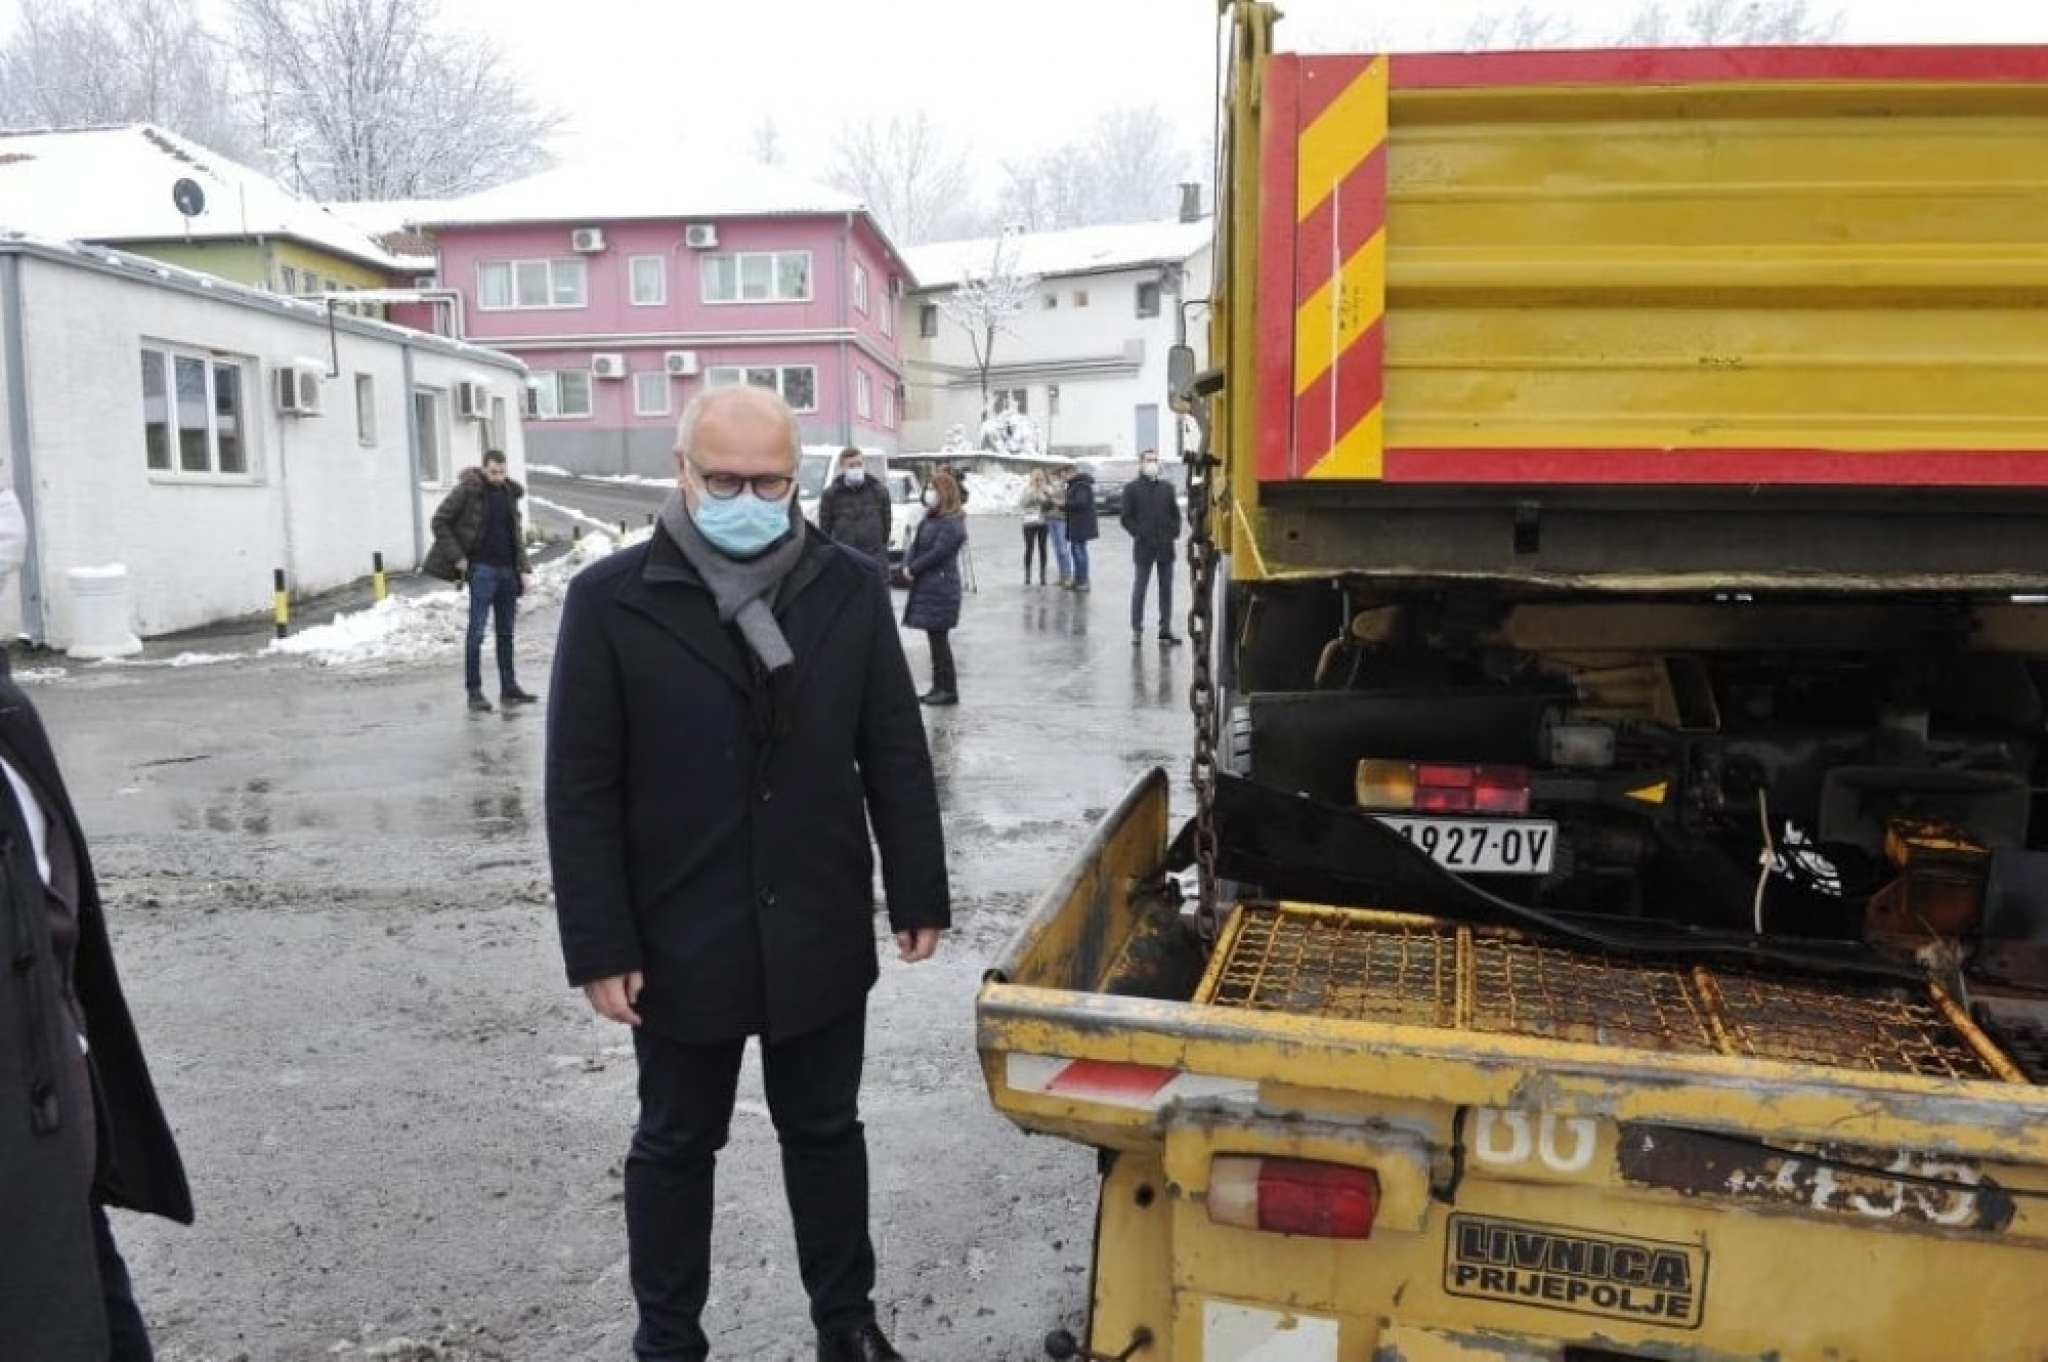 Goran Vesić. sneg, kamion, čišćenje snega